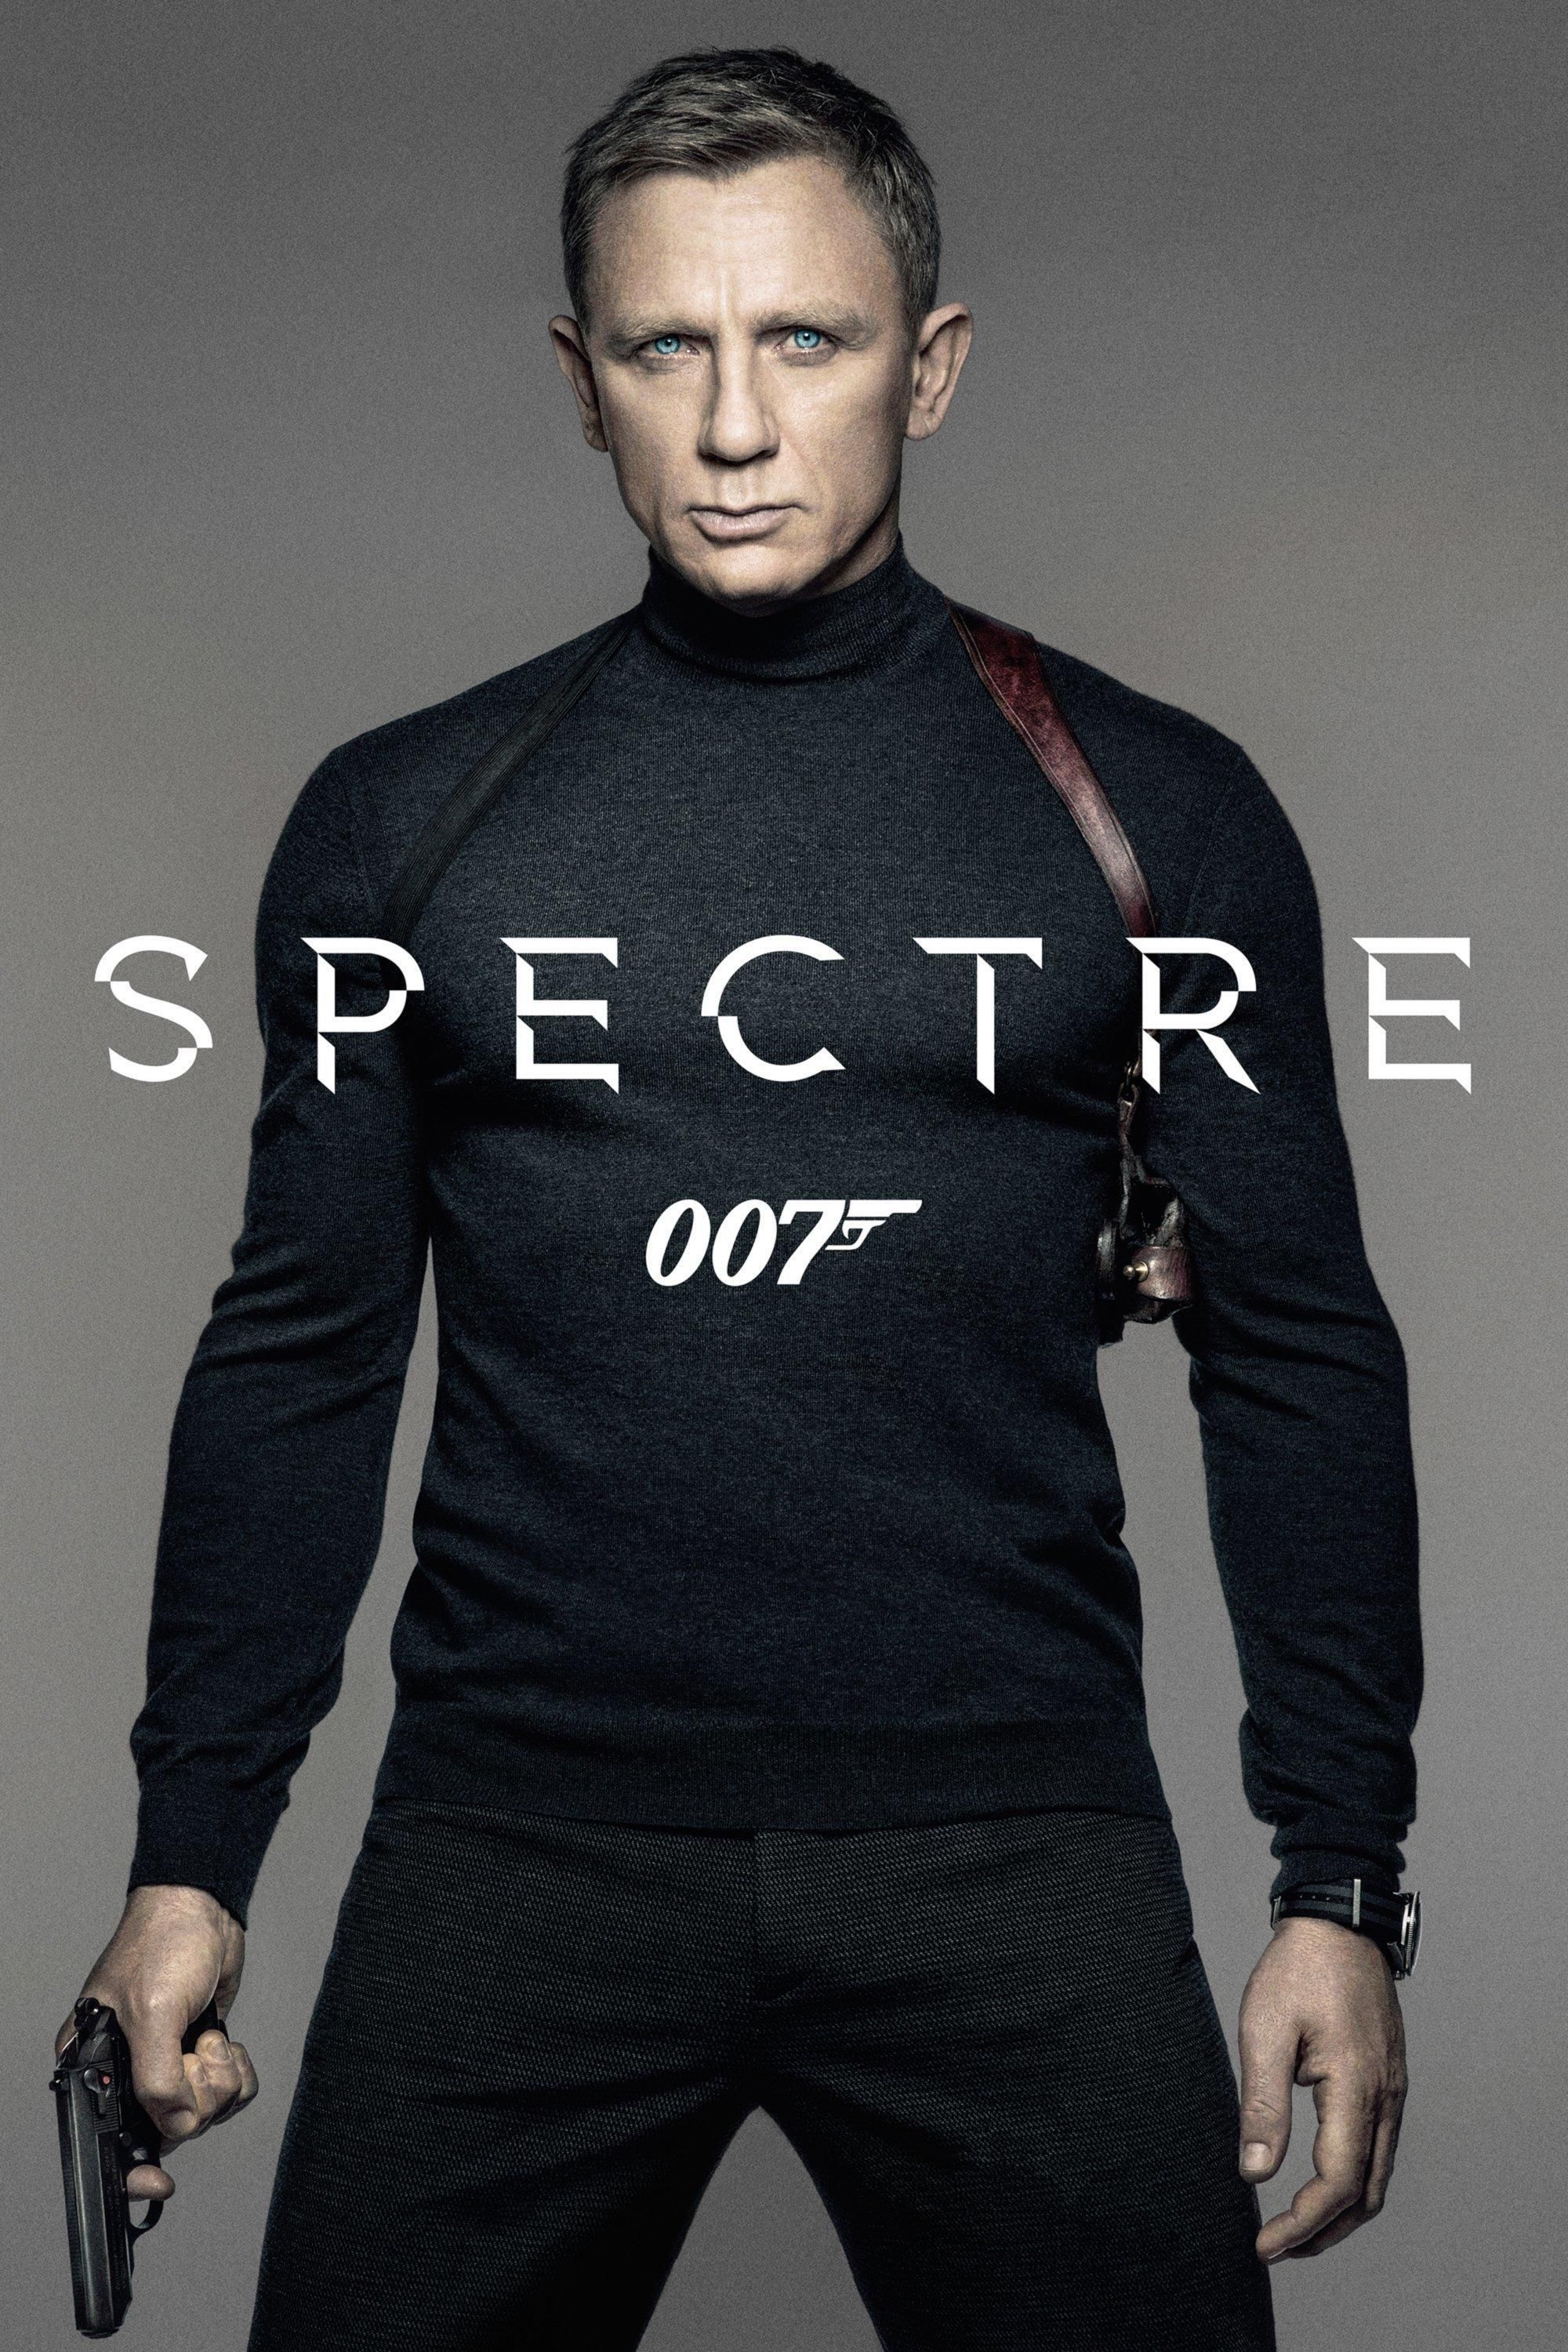 James Bond 007 Spectre 2015 Film Information Und Trailer Kinocheck 